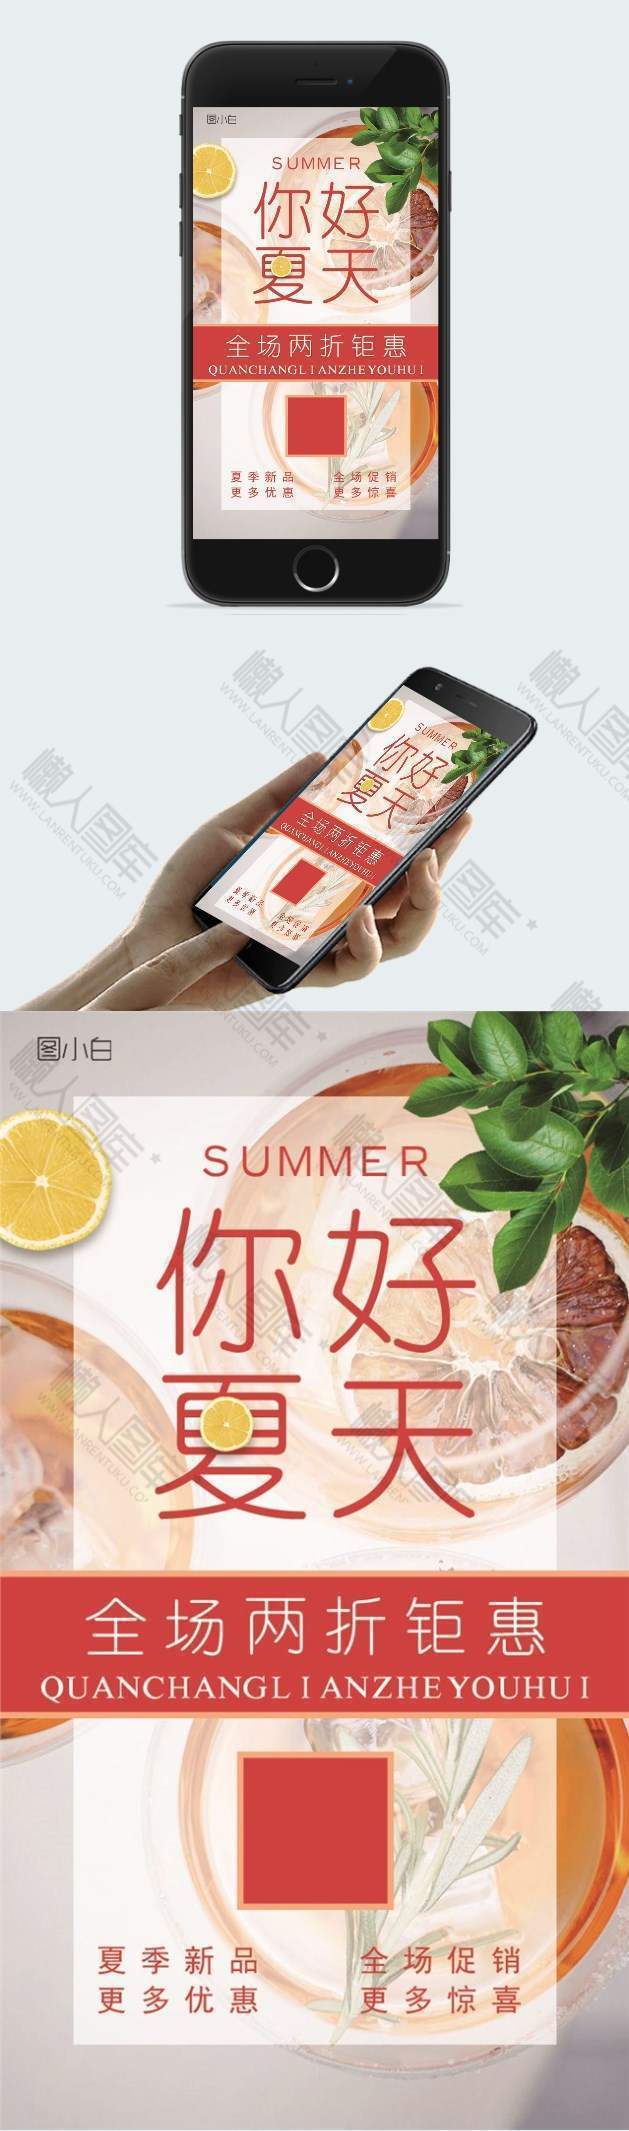 夏季饮品宣传促销广告宣传海报设计图